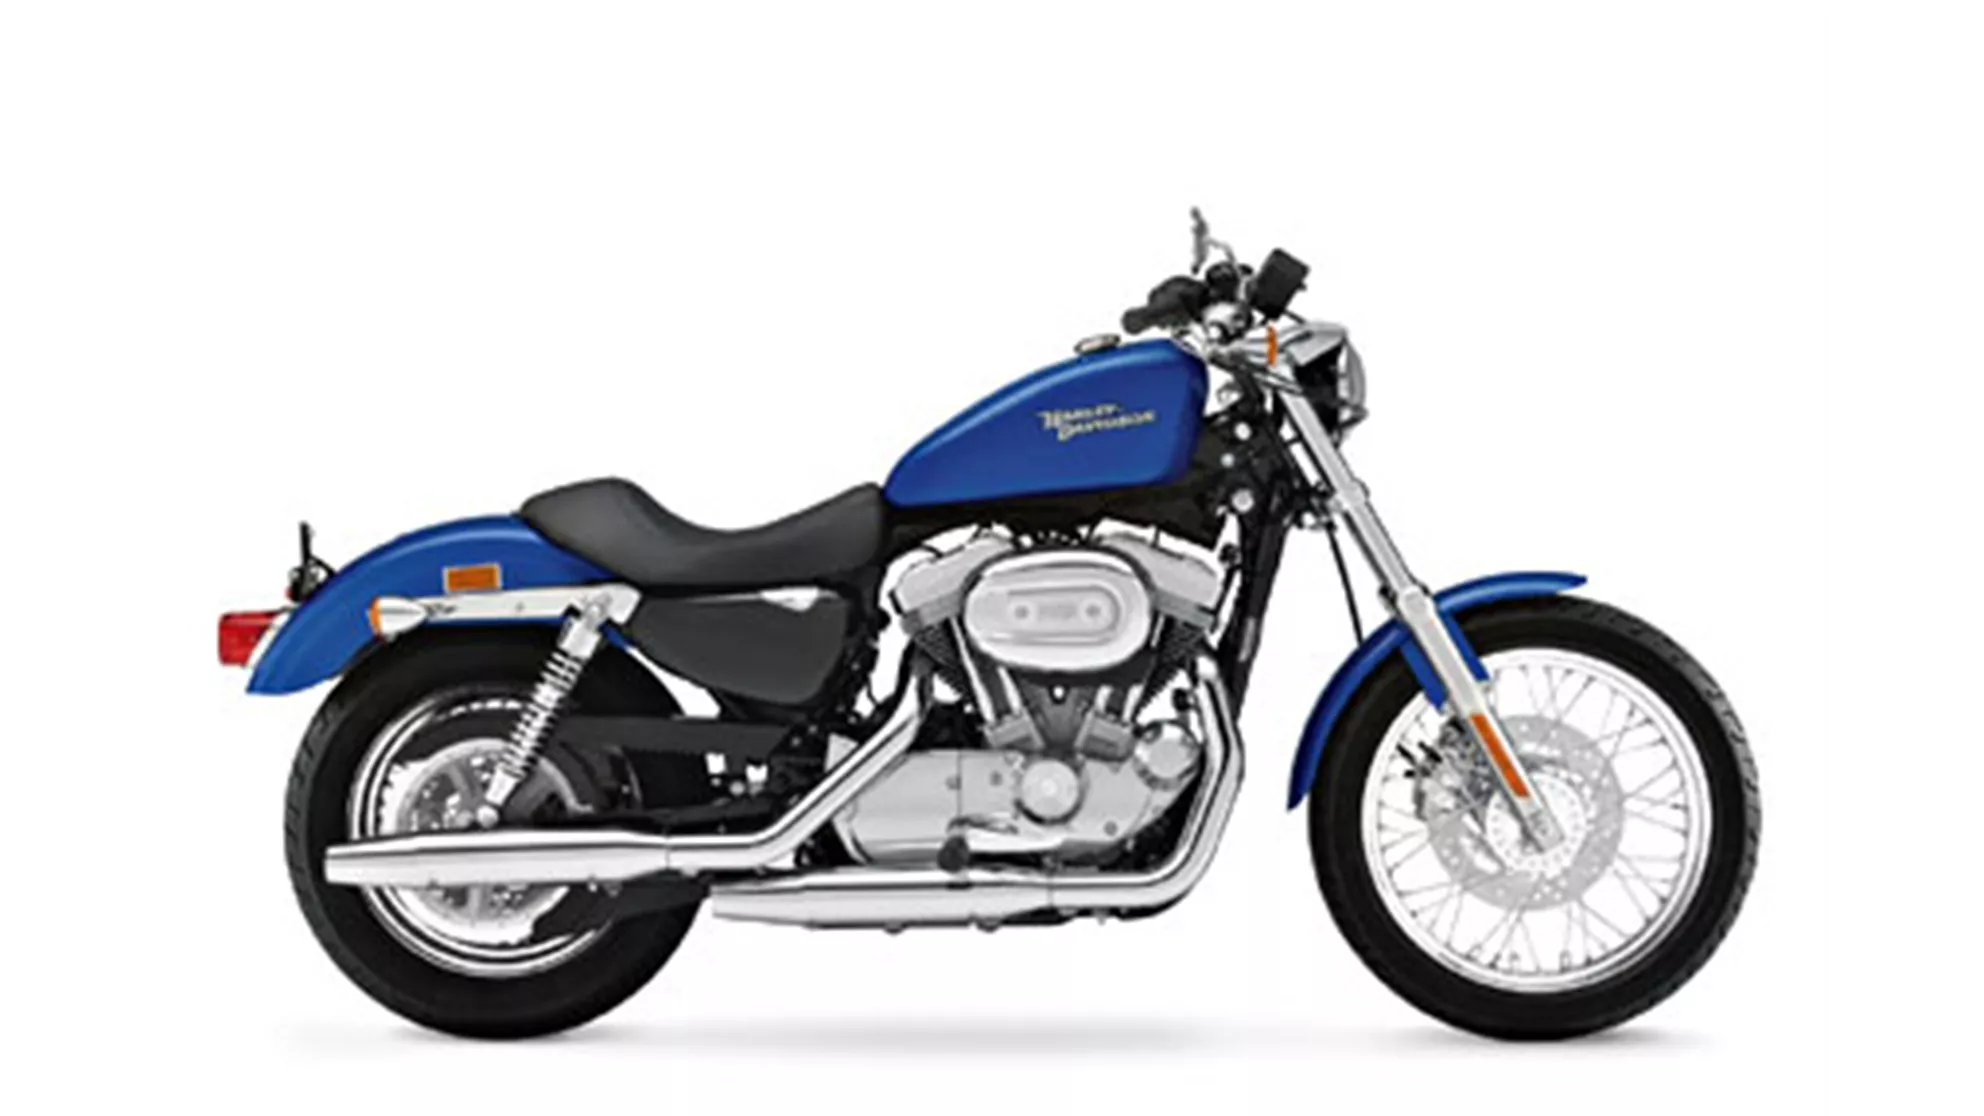 Harley-Davidson Sportster XL 883 - Image 2